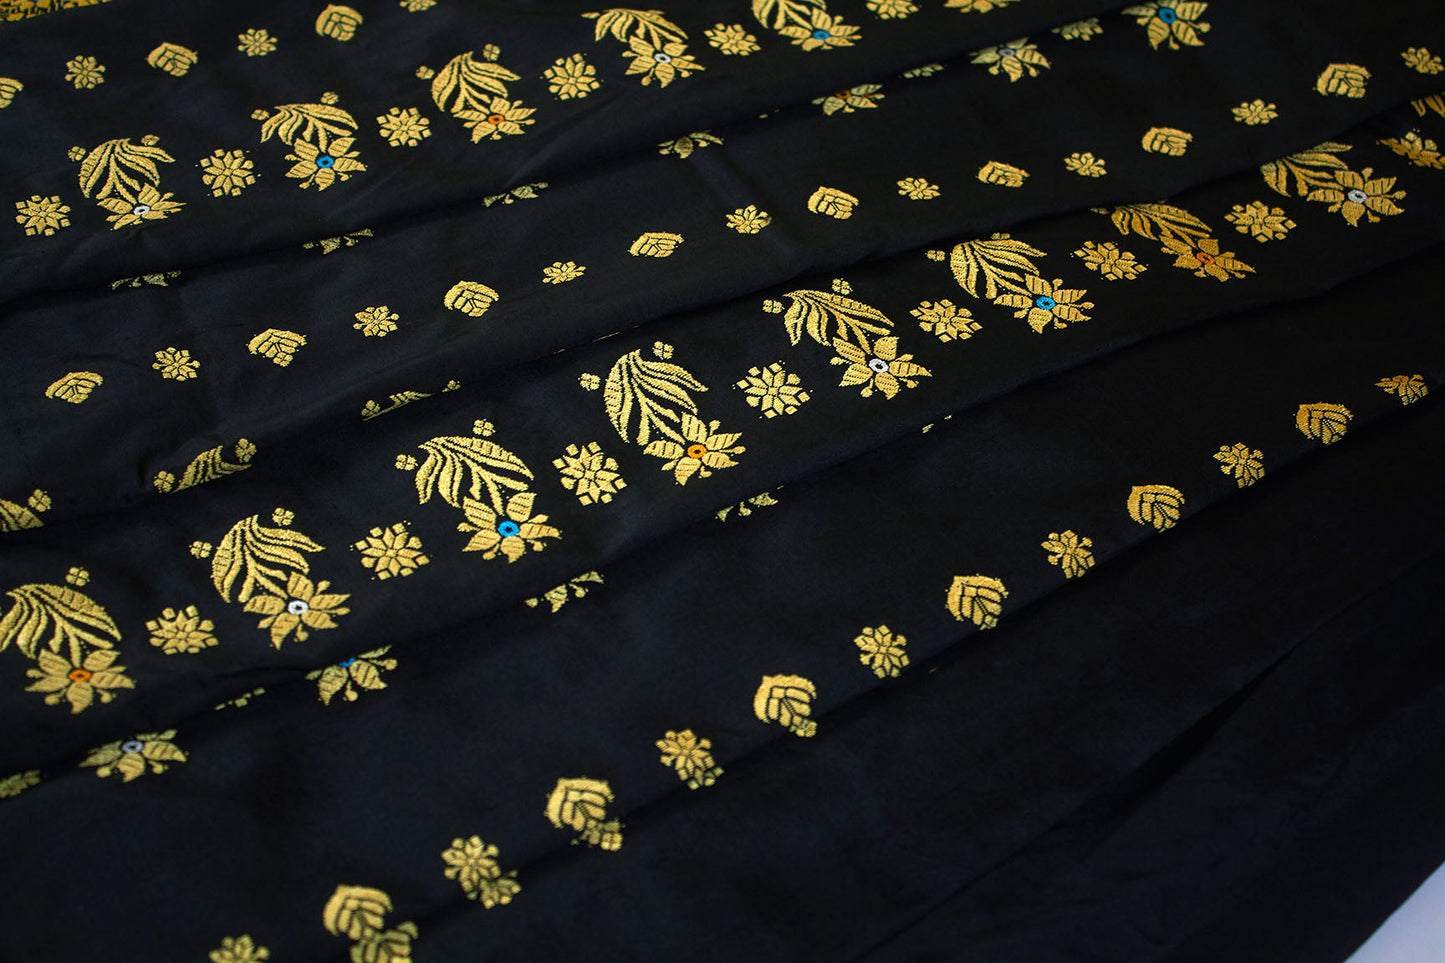 Sari en soie noir et or Assam Pat Handloom (fait sur commande)